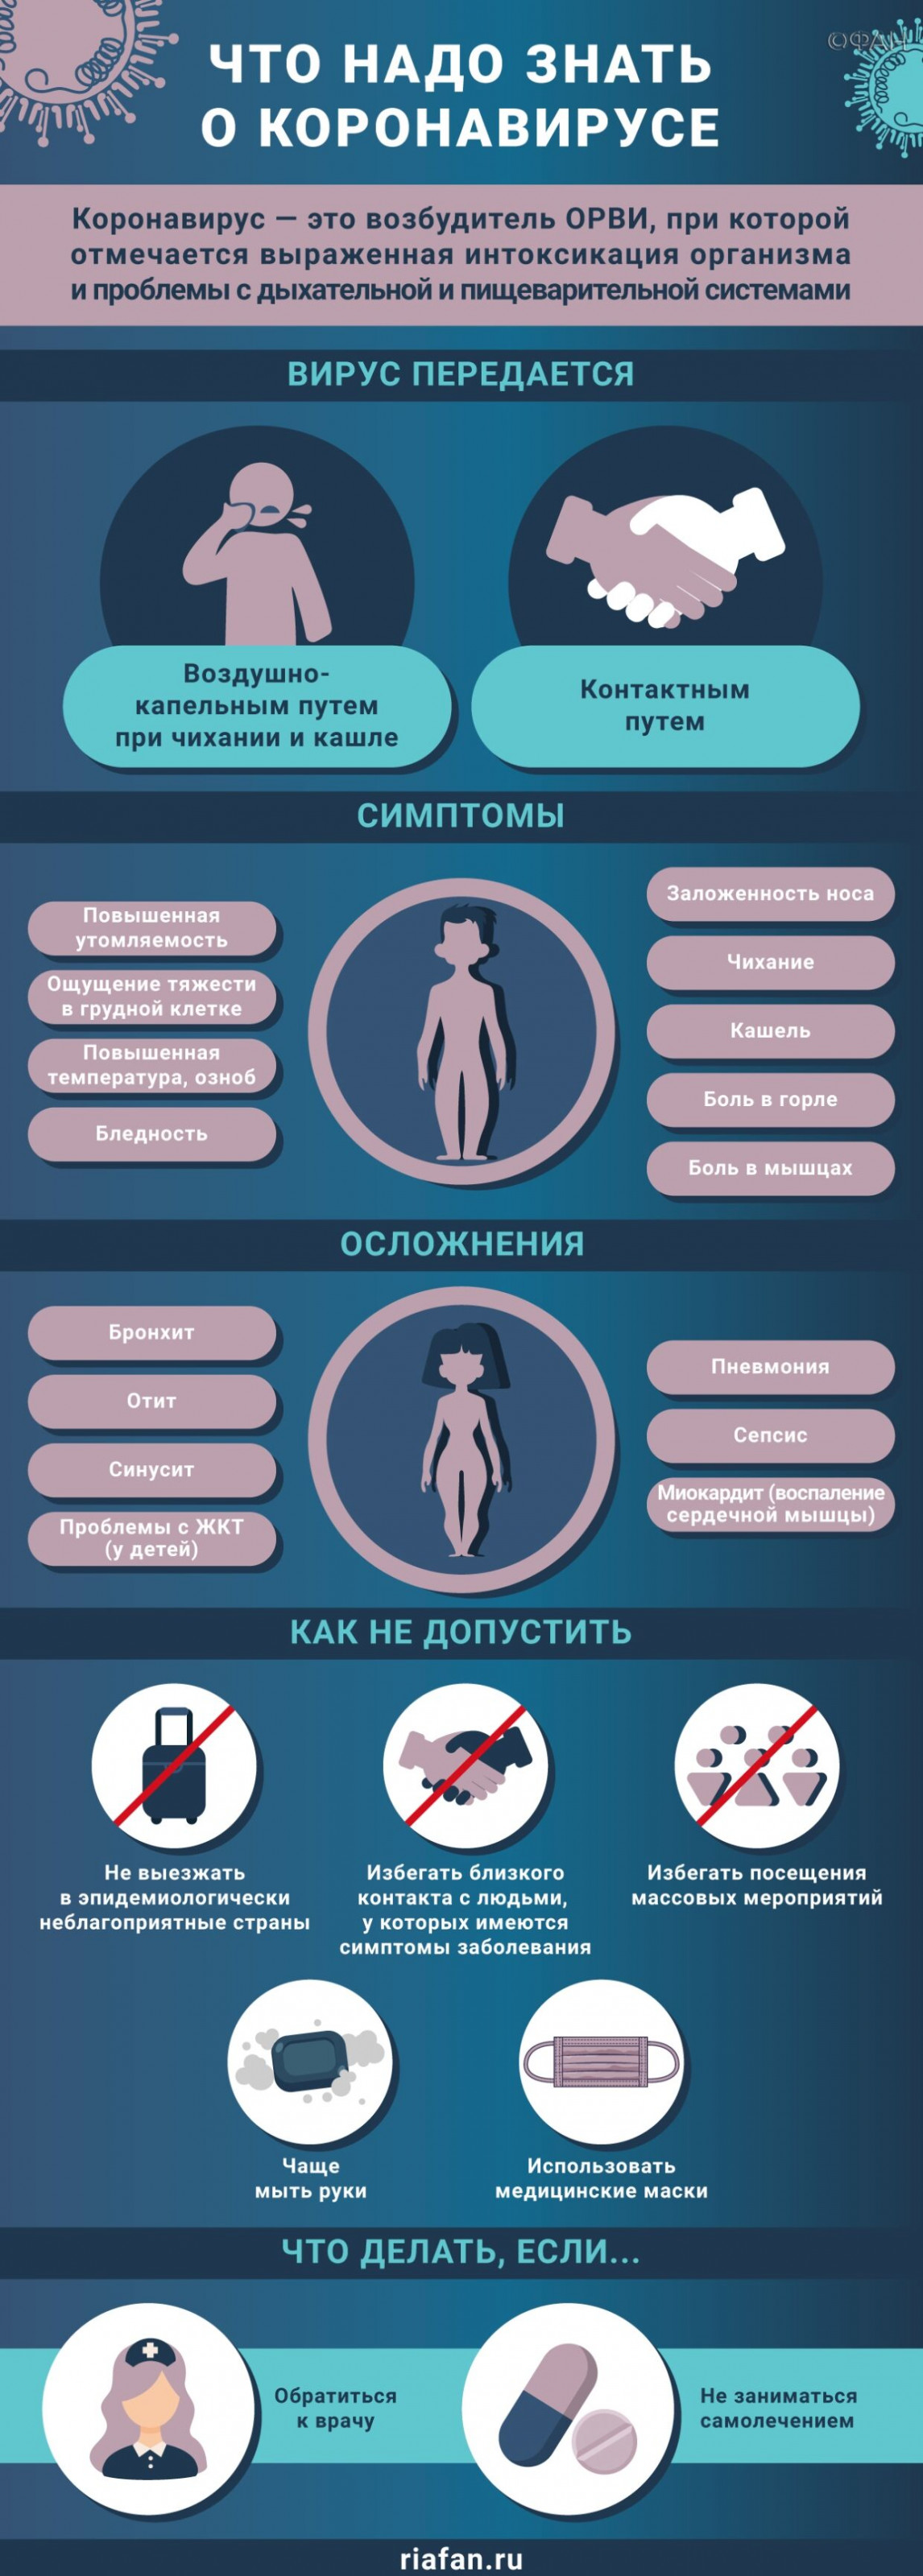 Медики выявили еще 383 случая коронавируса в Петербурге